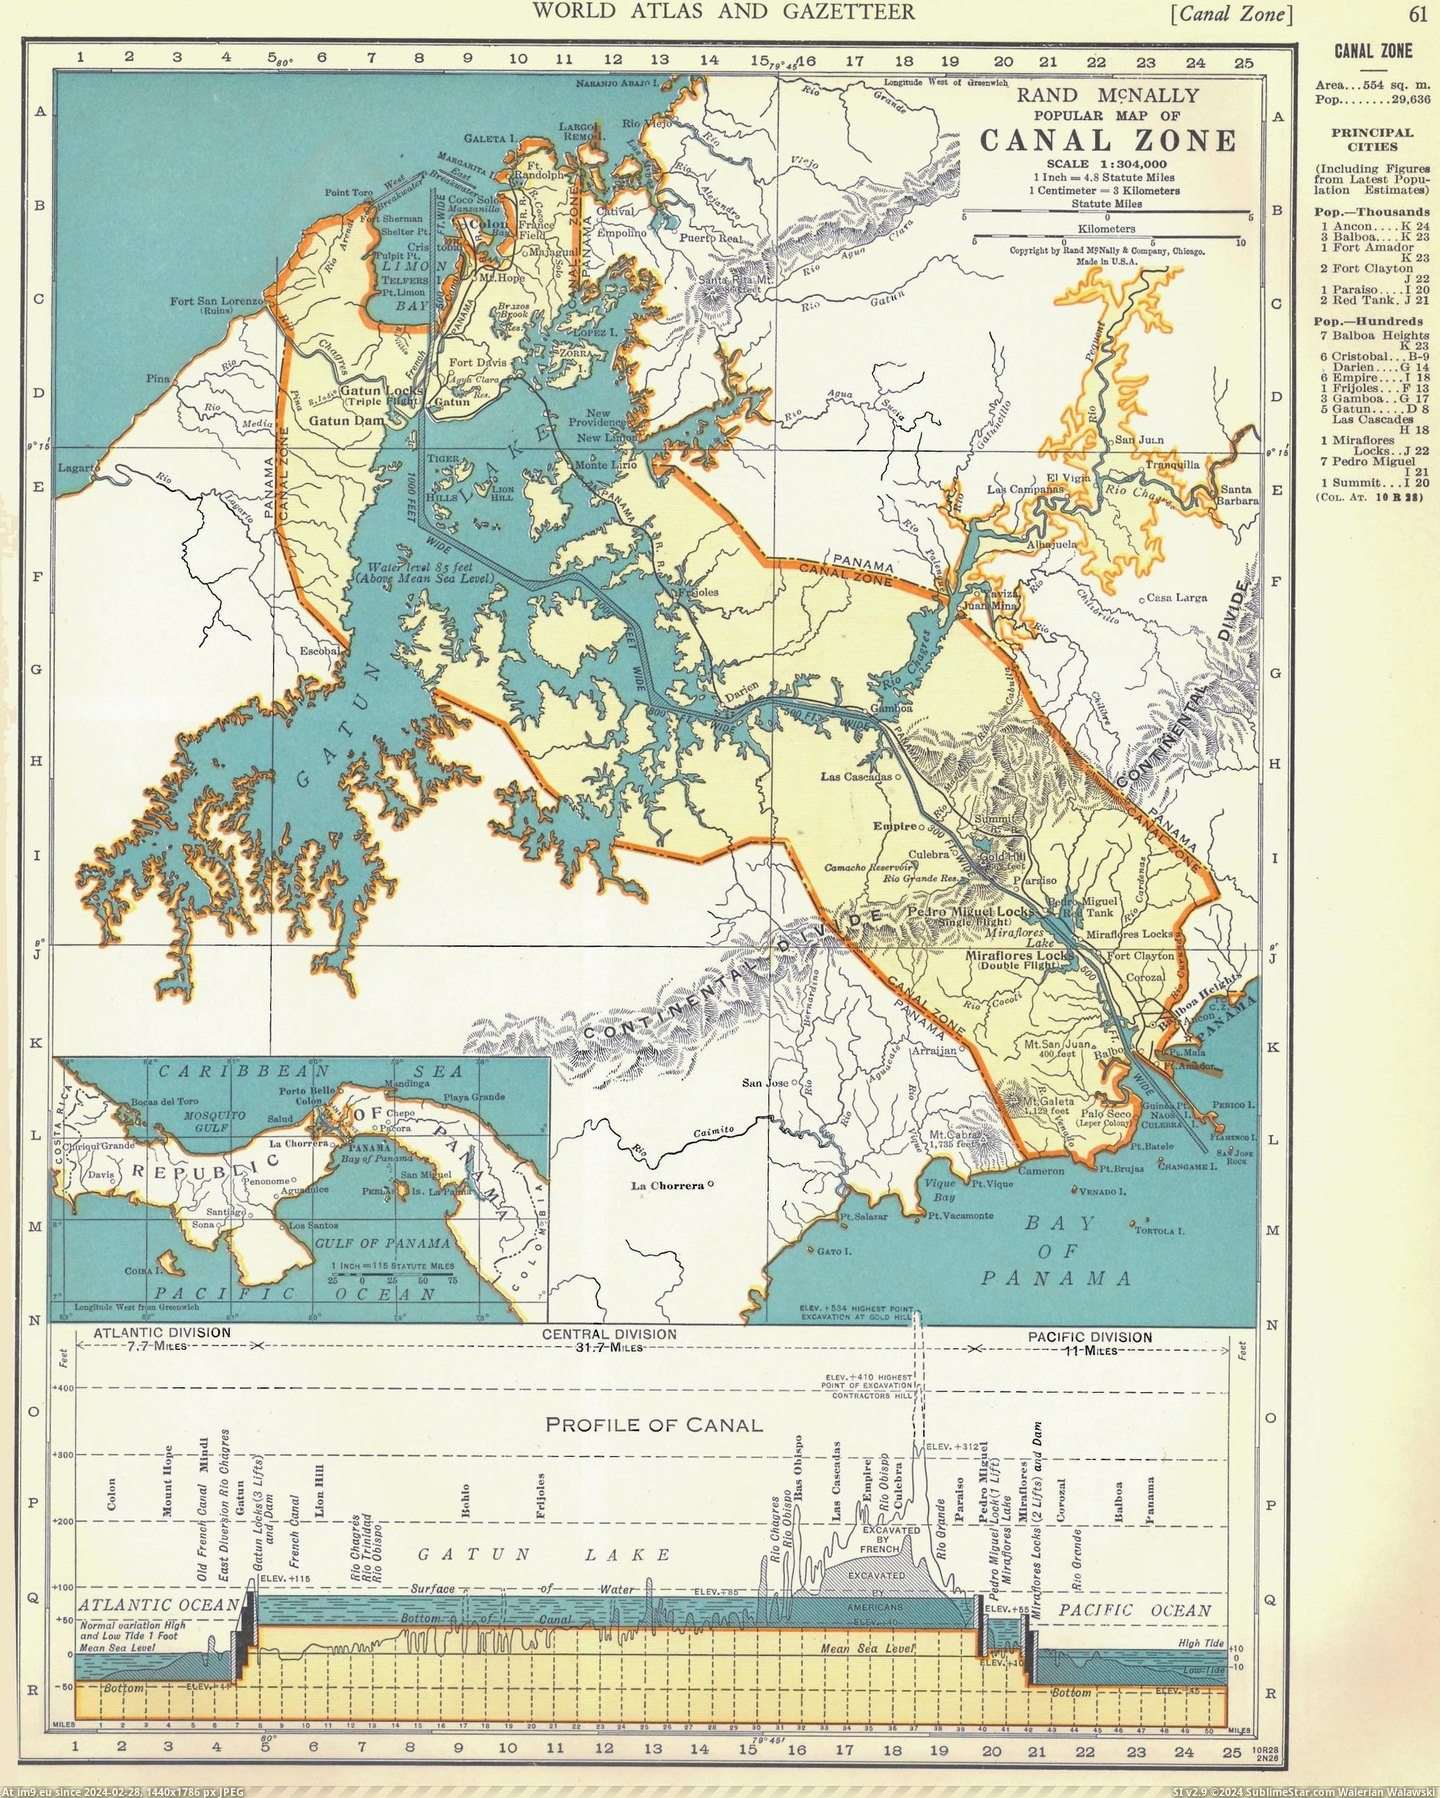 #Panama #Zone #Canal [Mapporn] Panama Canal Zone 1939 [2073x2583] Pic. (Obraz z album My r/MAPS favs))